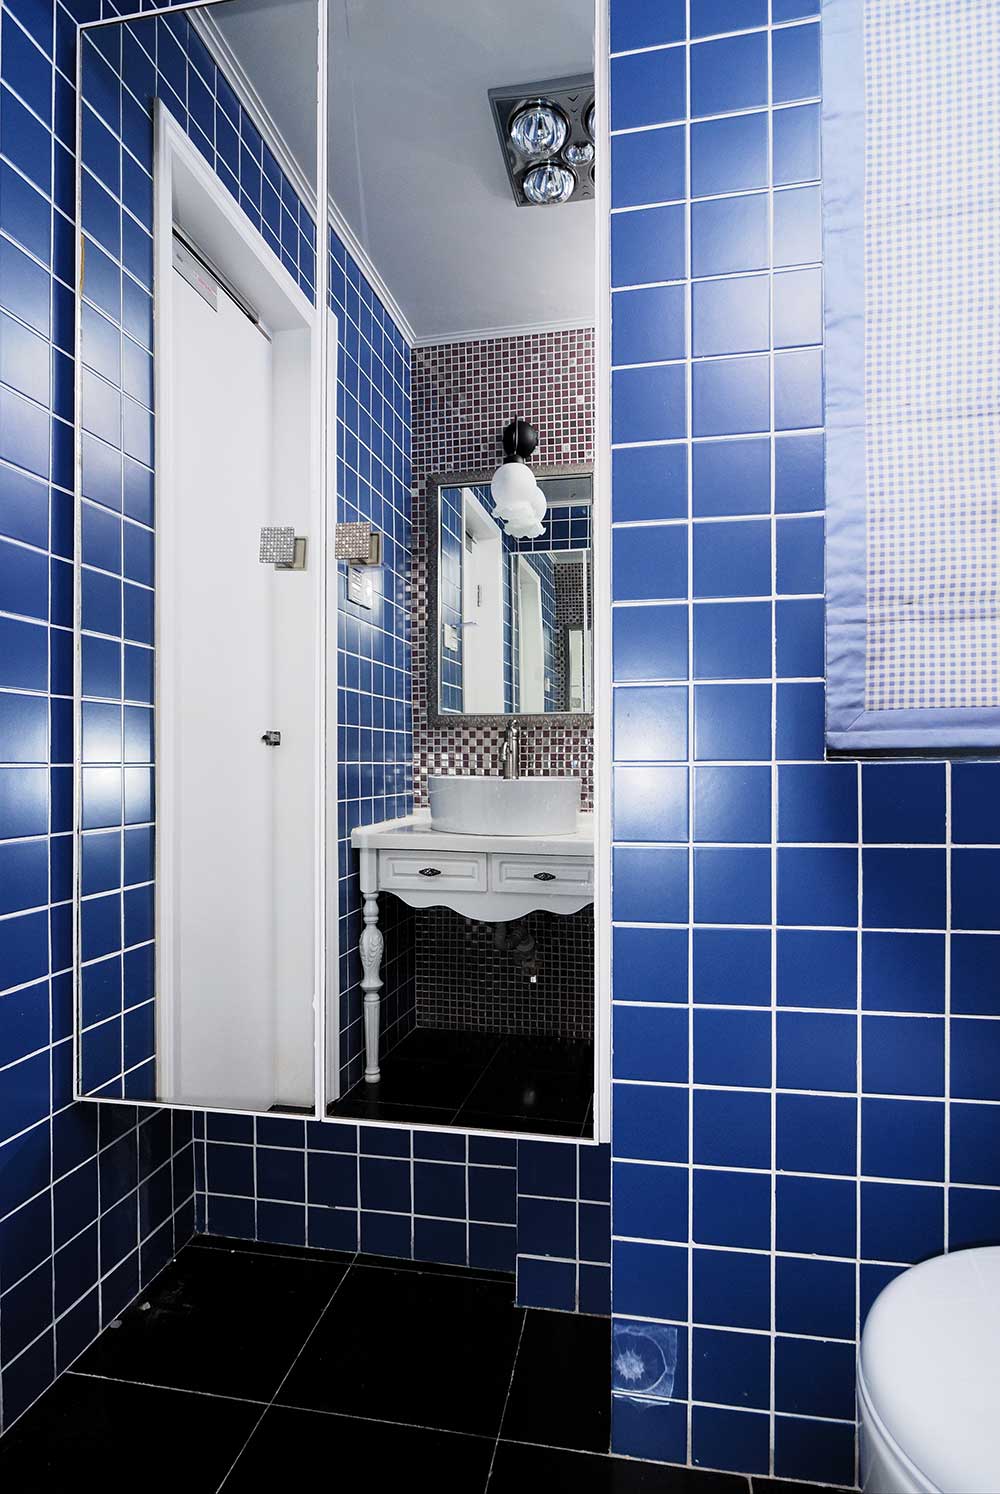 蓝色的瓷砖贴满了整个卫生间，镜面的浴室柜和洗手池的镜子相互反射，复古透亮。